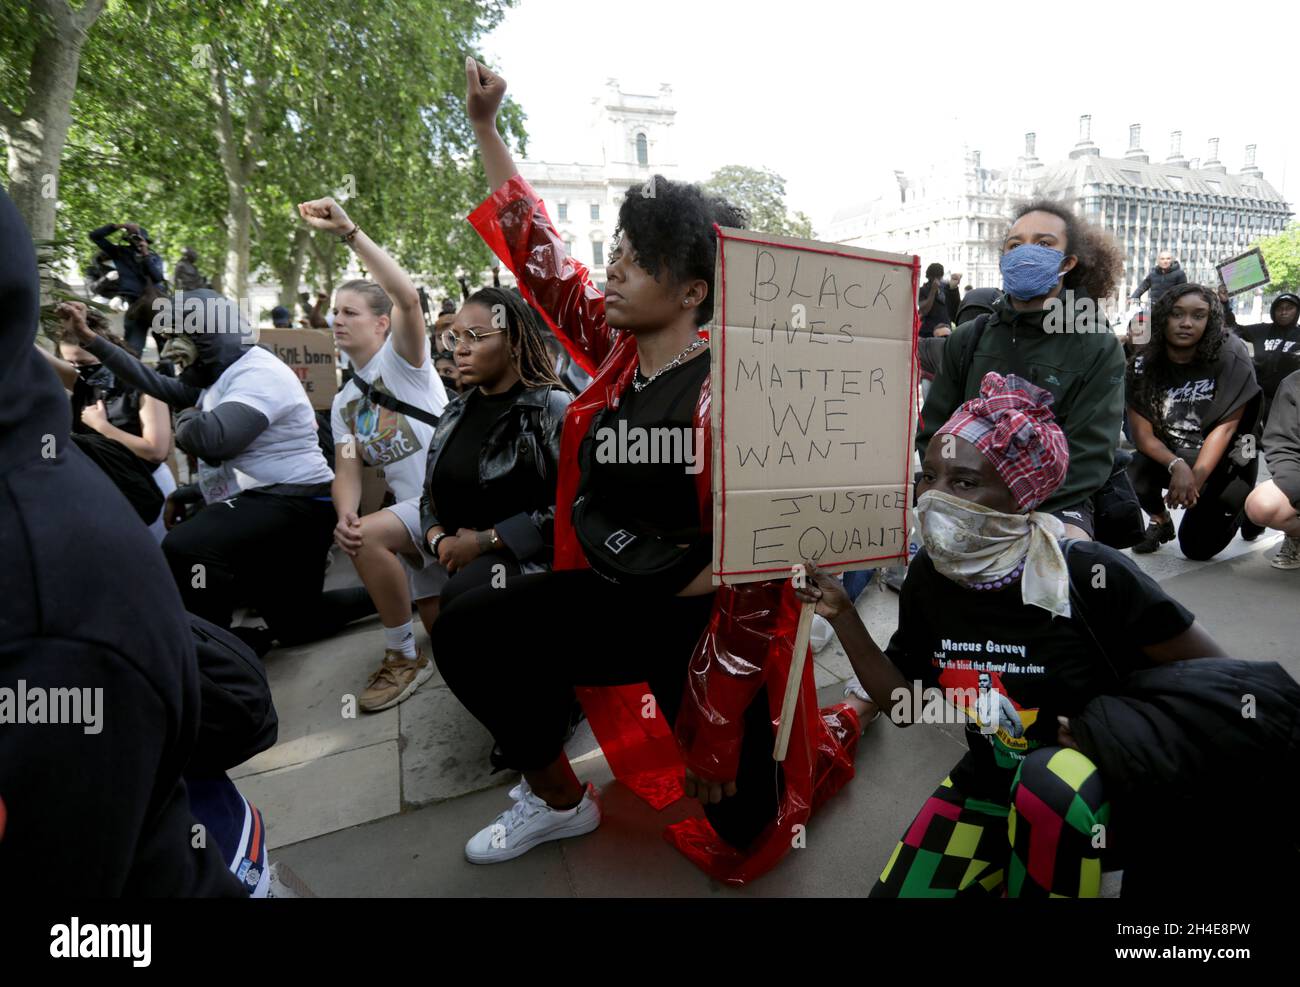 Les gens prennent le genou lors d'un rassemblement à la statue de Nelson Mandela sur la place du Parlement, à Londres, alors que les funérailles de George Floyd ont lieu aux États-Unis à la suite de sa mort le 25 mai, alors qu'il était en garde à vue dans la ville américaine de Minneapolis.Date de la photo: Mardi 9 juin 2020. Banque D'Images